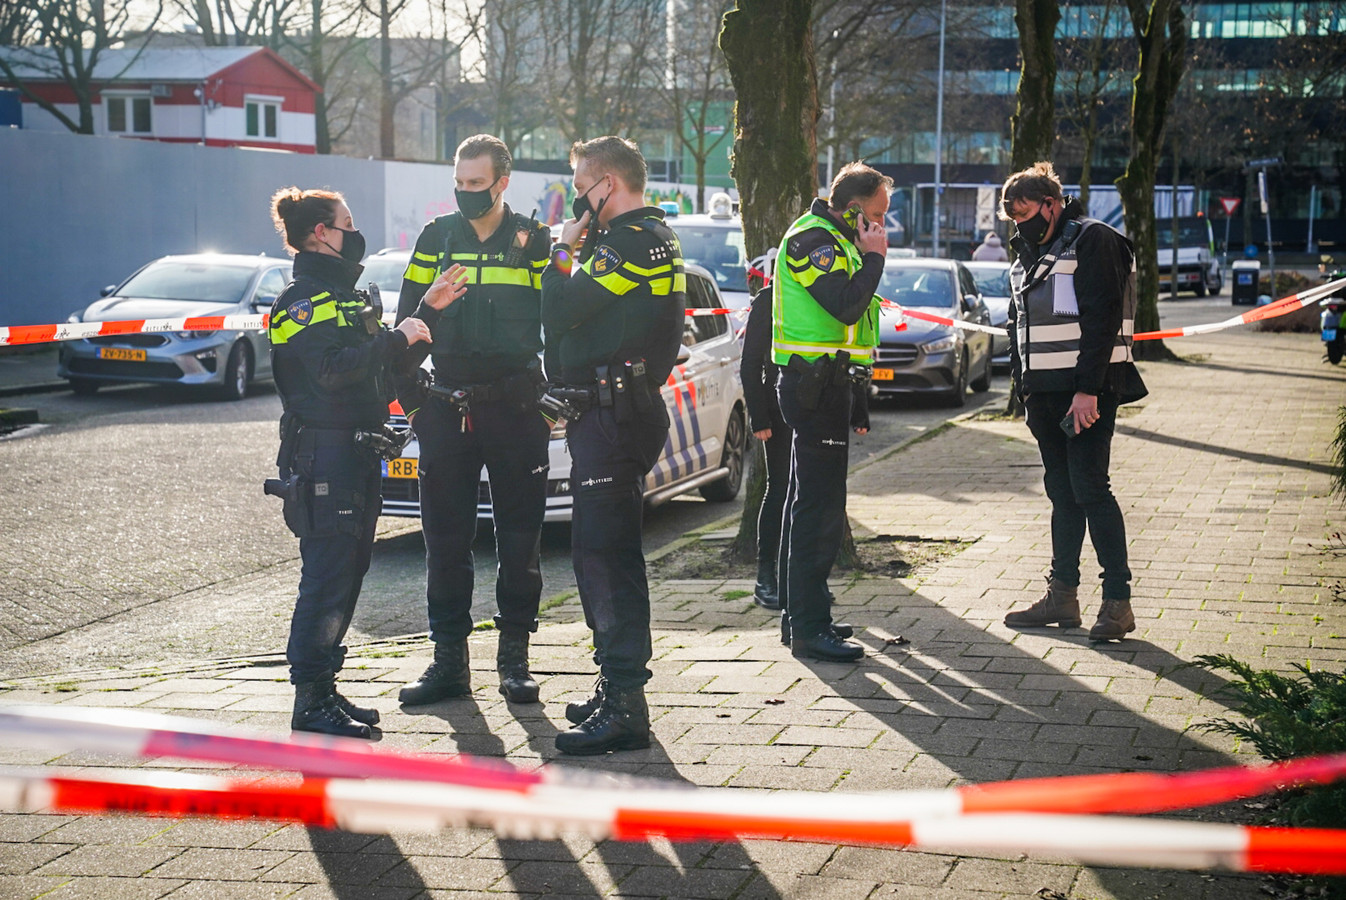 De politie heeft woensdagochtend aan de Bisschopsmolen in Eindhoven een inbreker neergeschoten.